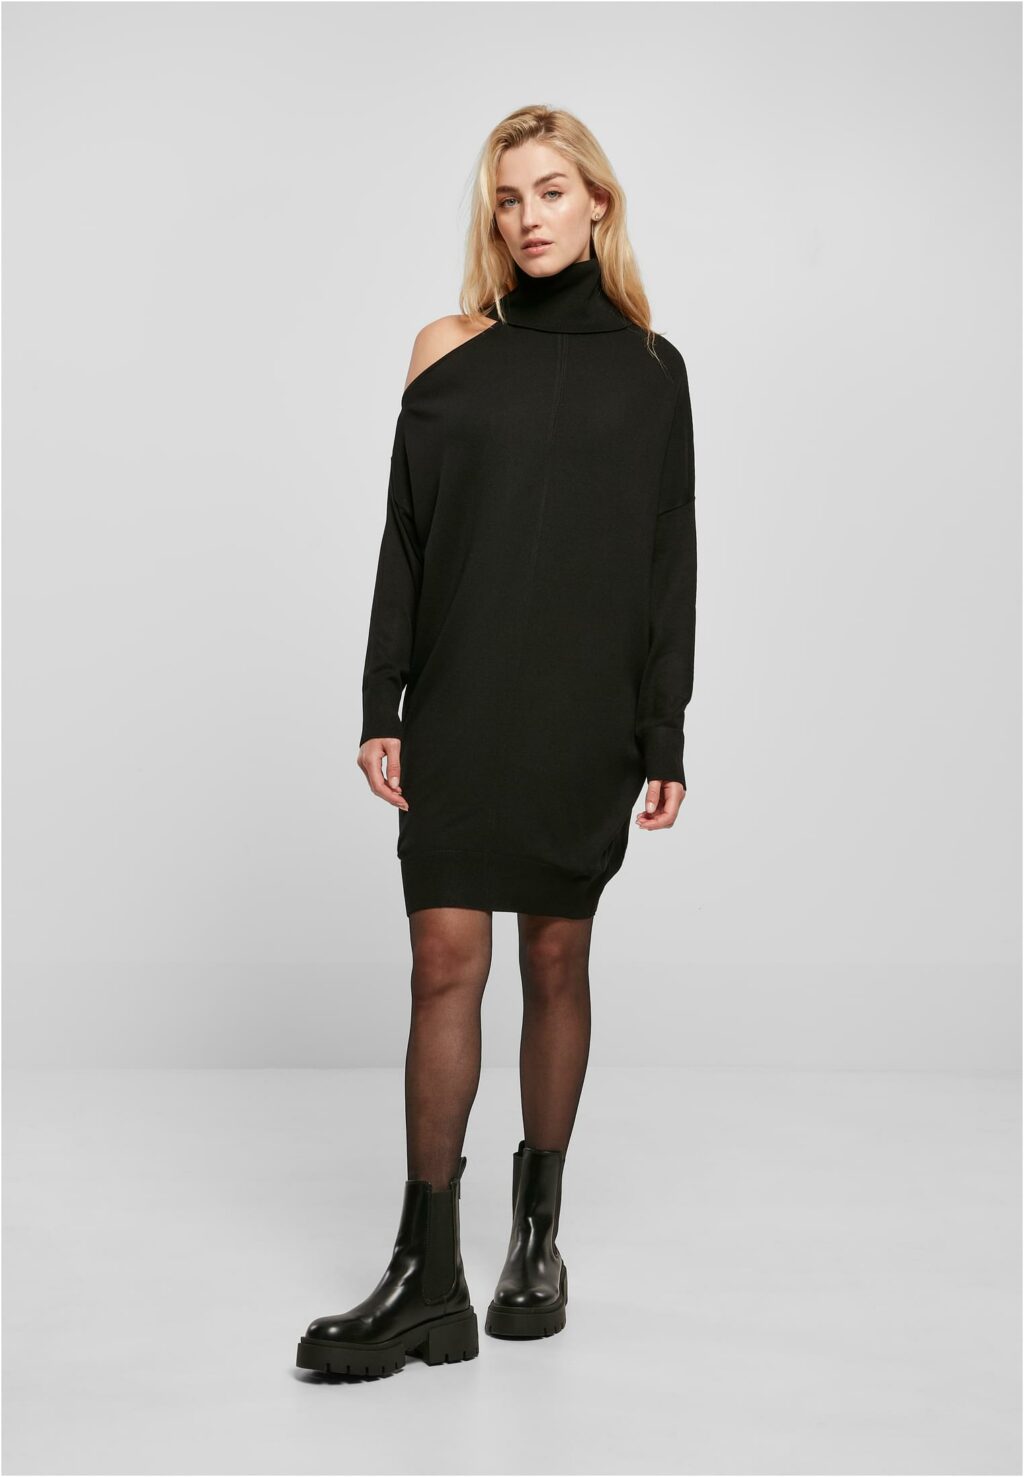 Urban Classics Ladies One Shoulder Knit Dress black TB5447